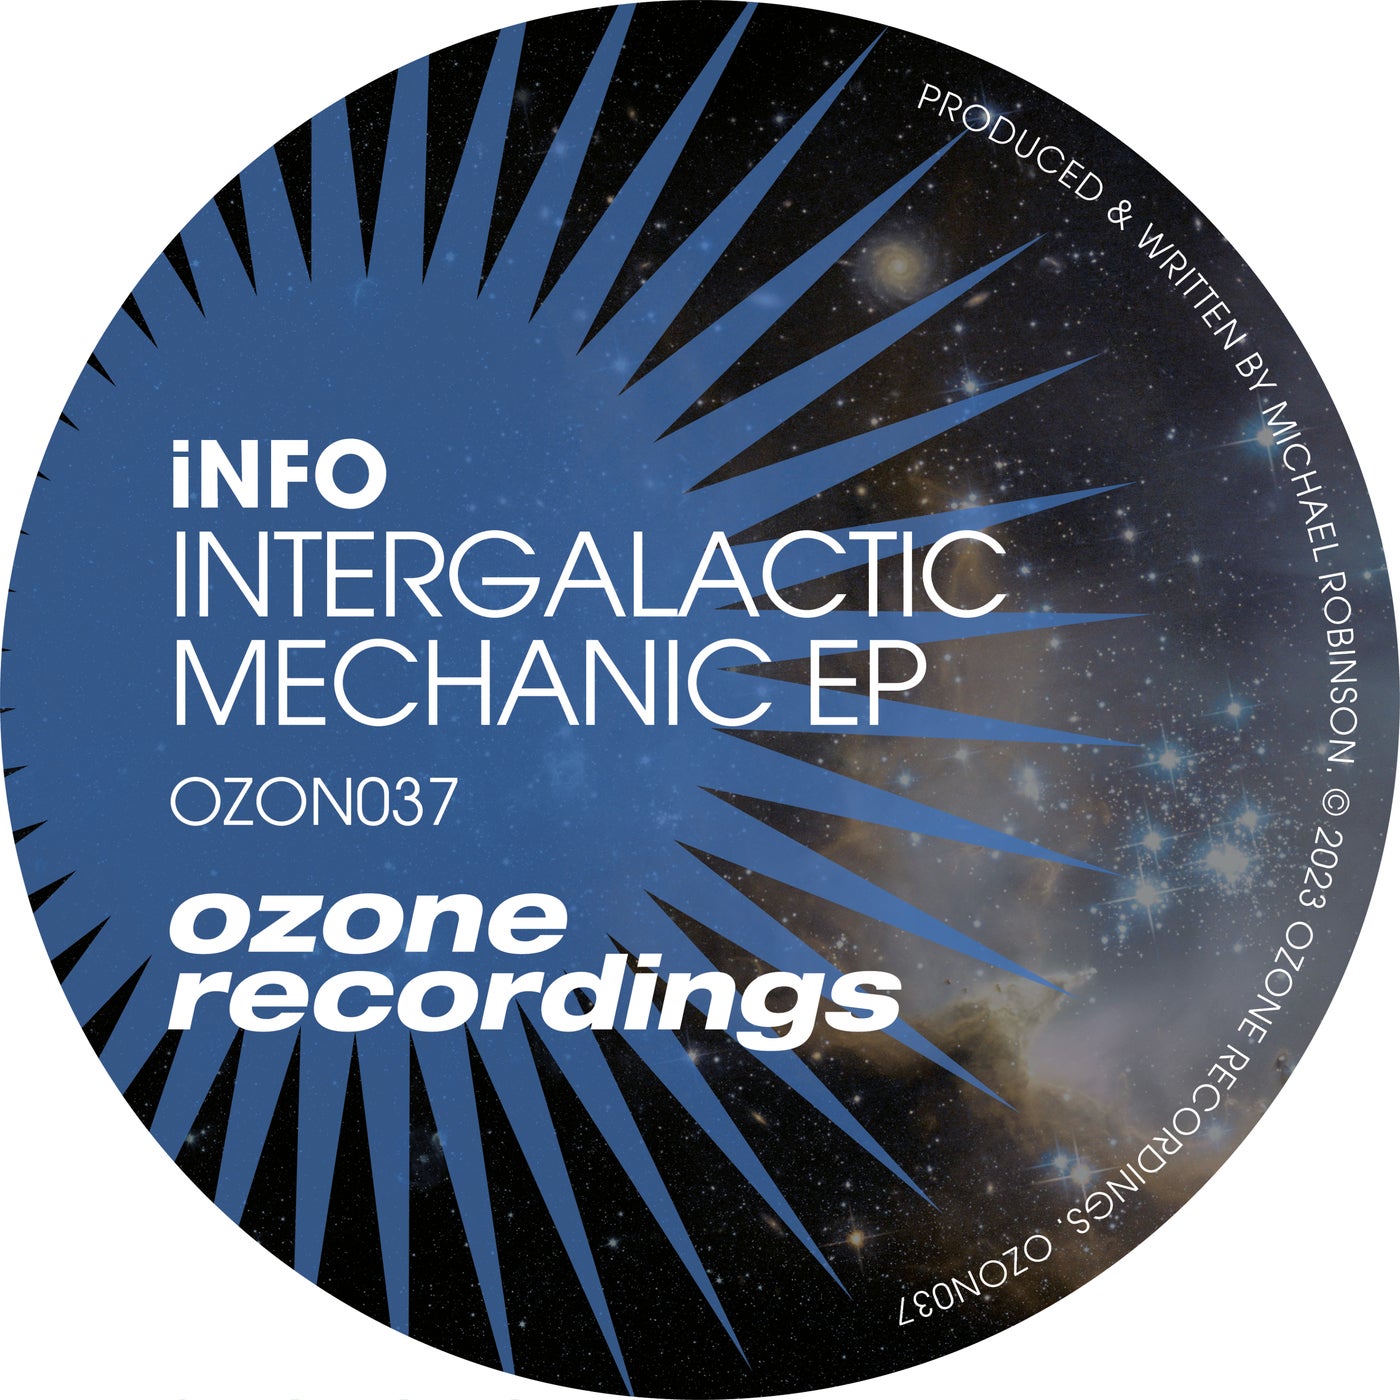 Intergalactic Mechanic EP